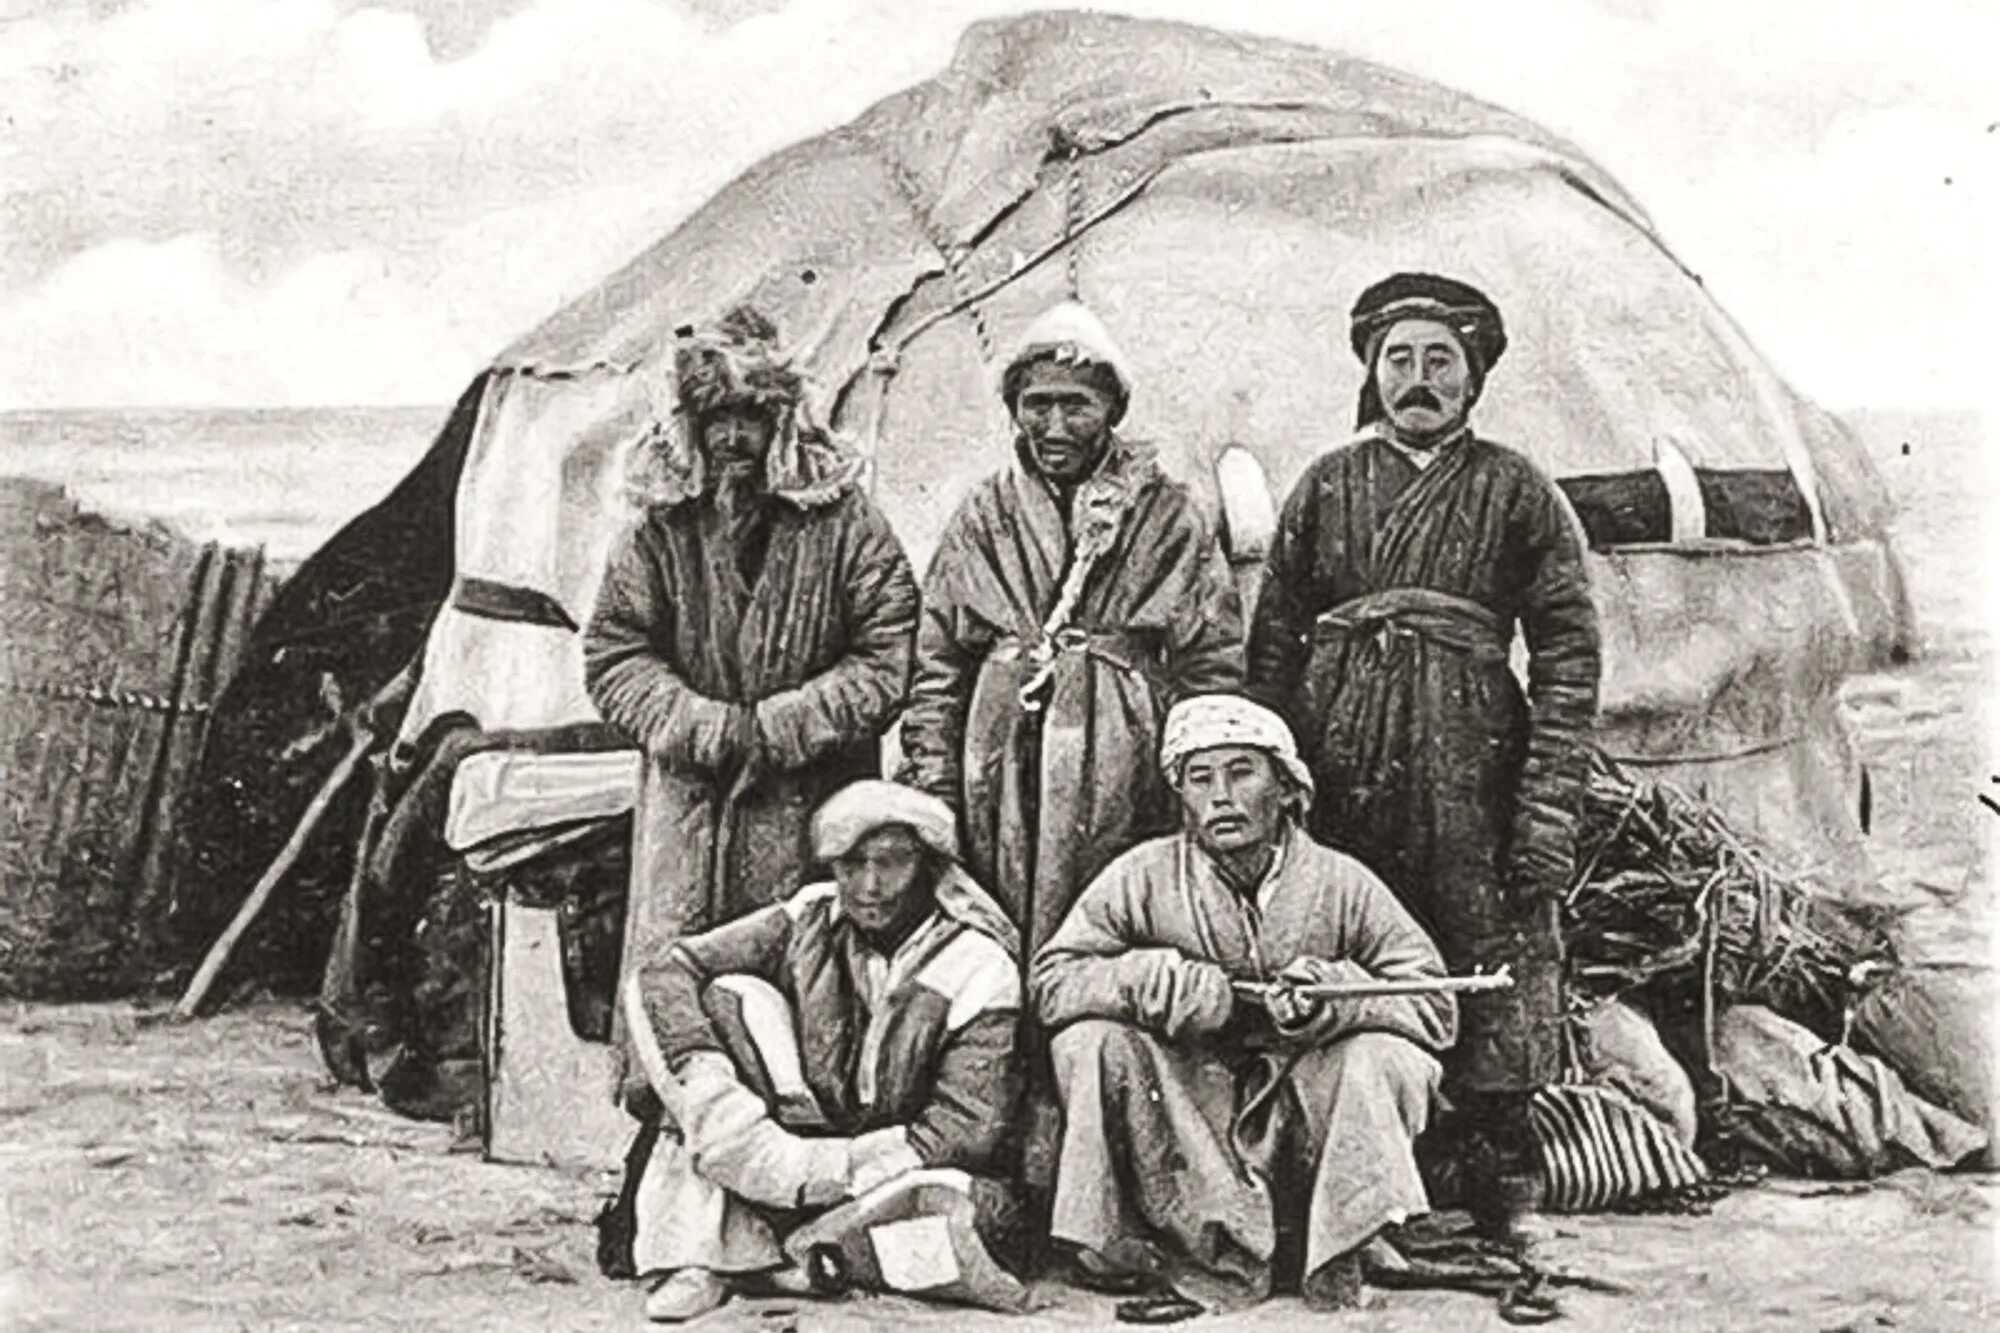 История народа казахстана. Юрты алтайцев 19 век. Киргизские кочевники 19 век. Киргизы Азии 19 век. Казахская степь 19 век.